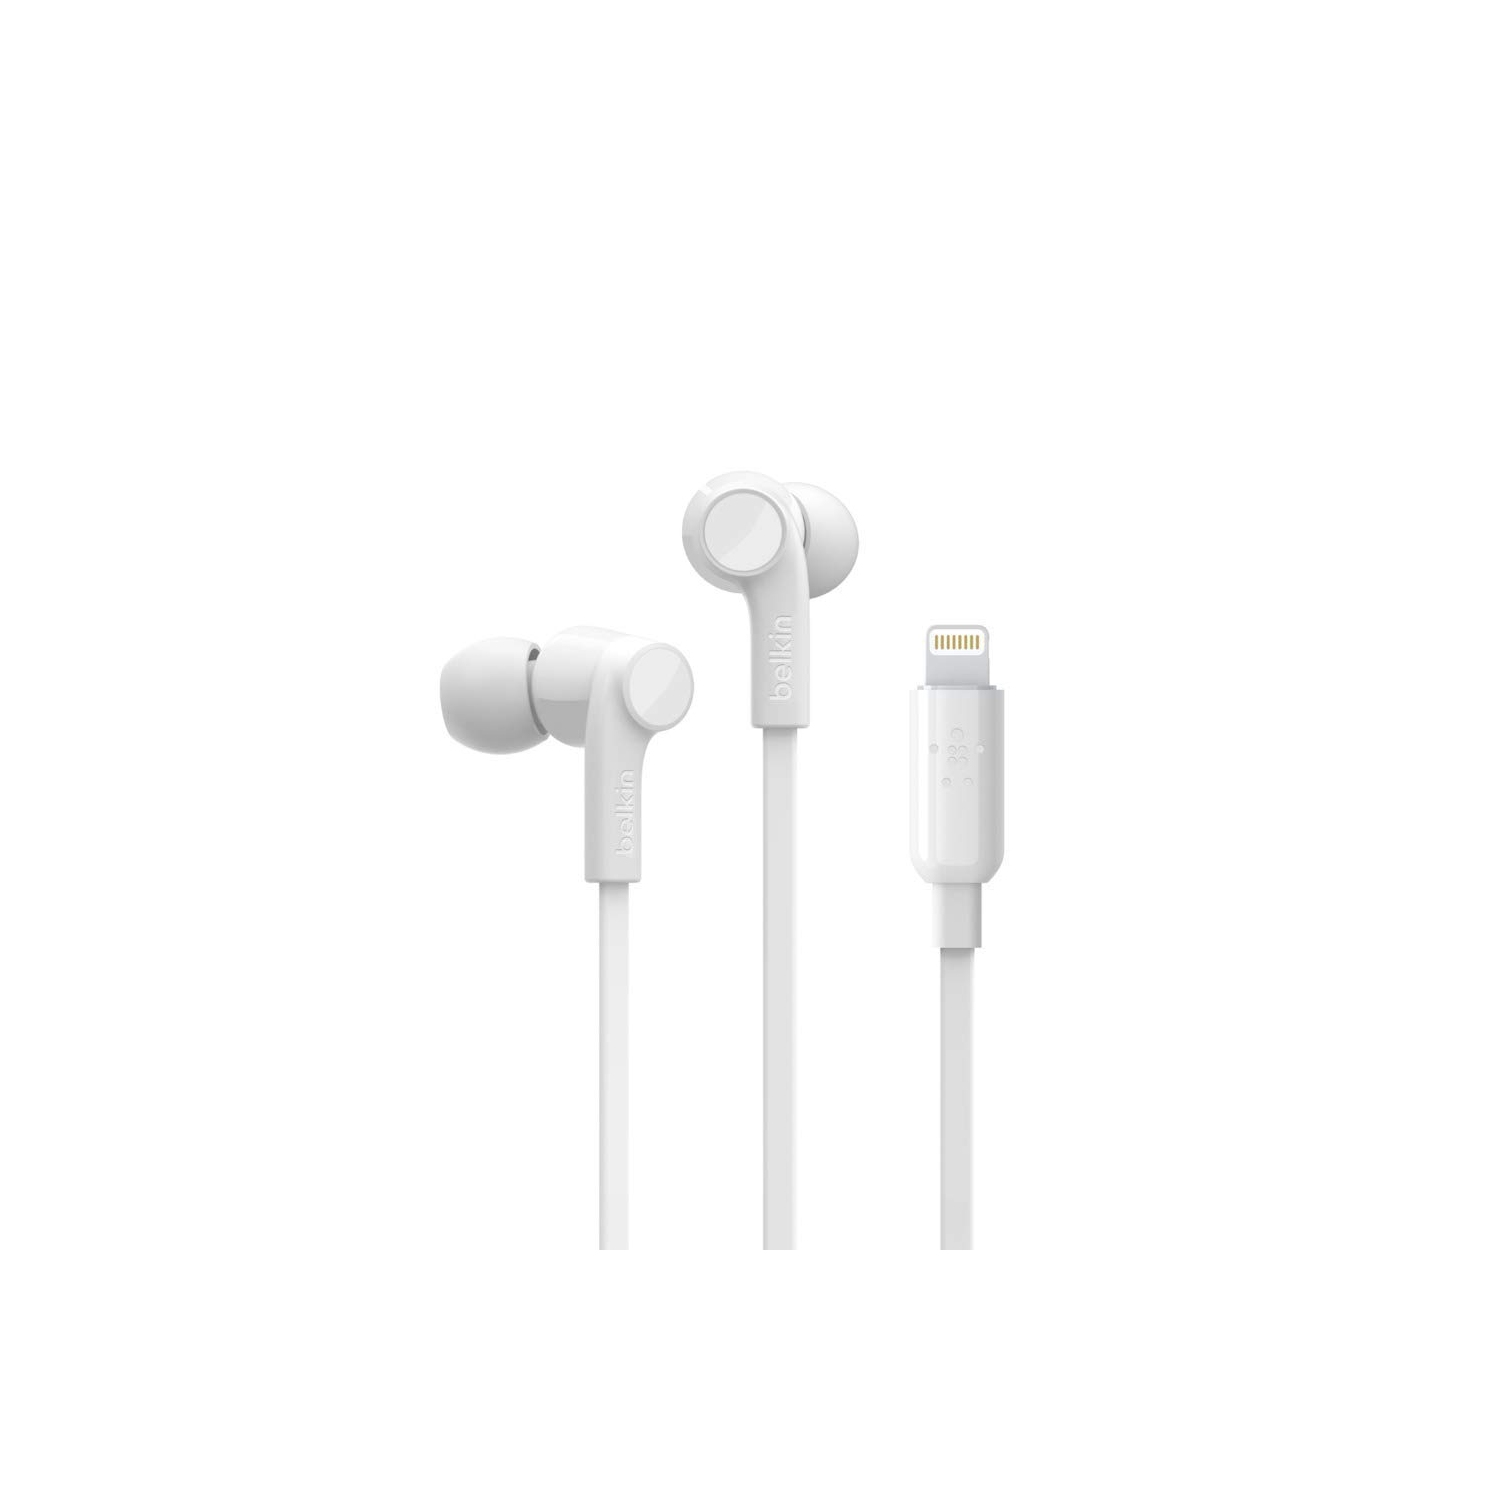 Belkin RockStar iPhone Headphones with Lightning Connector (Lightning Headphones for iPhone, Lightning Earphones for iPhone)